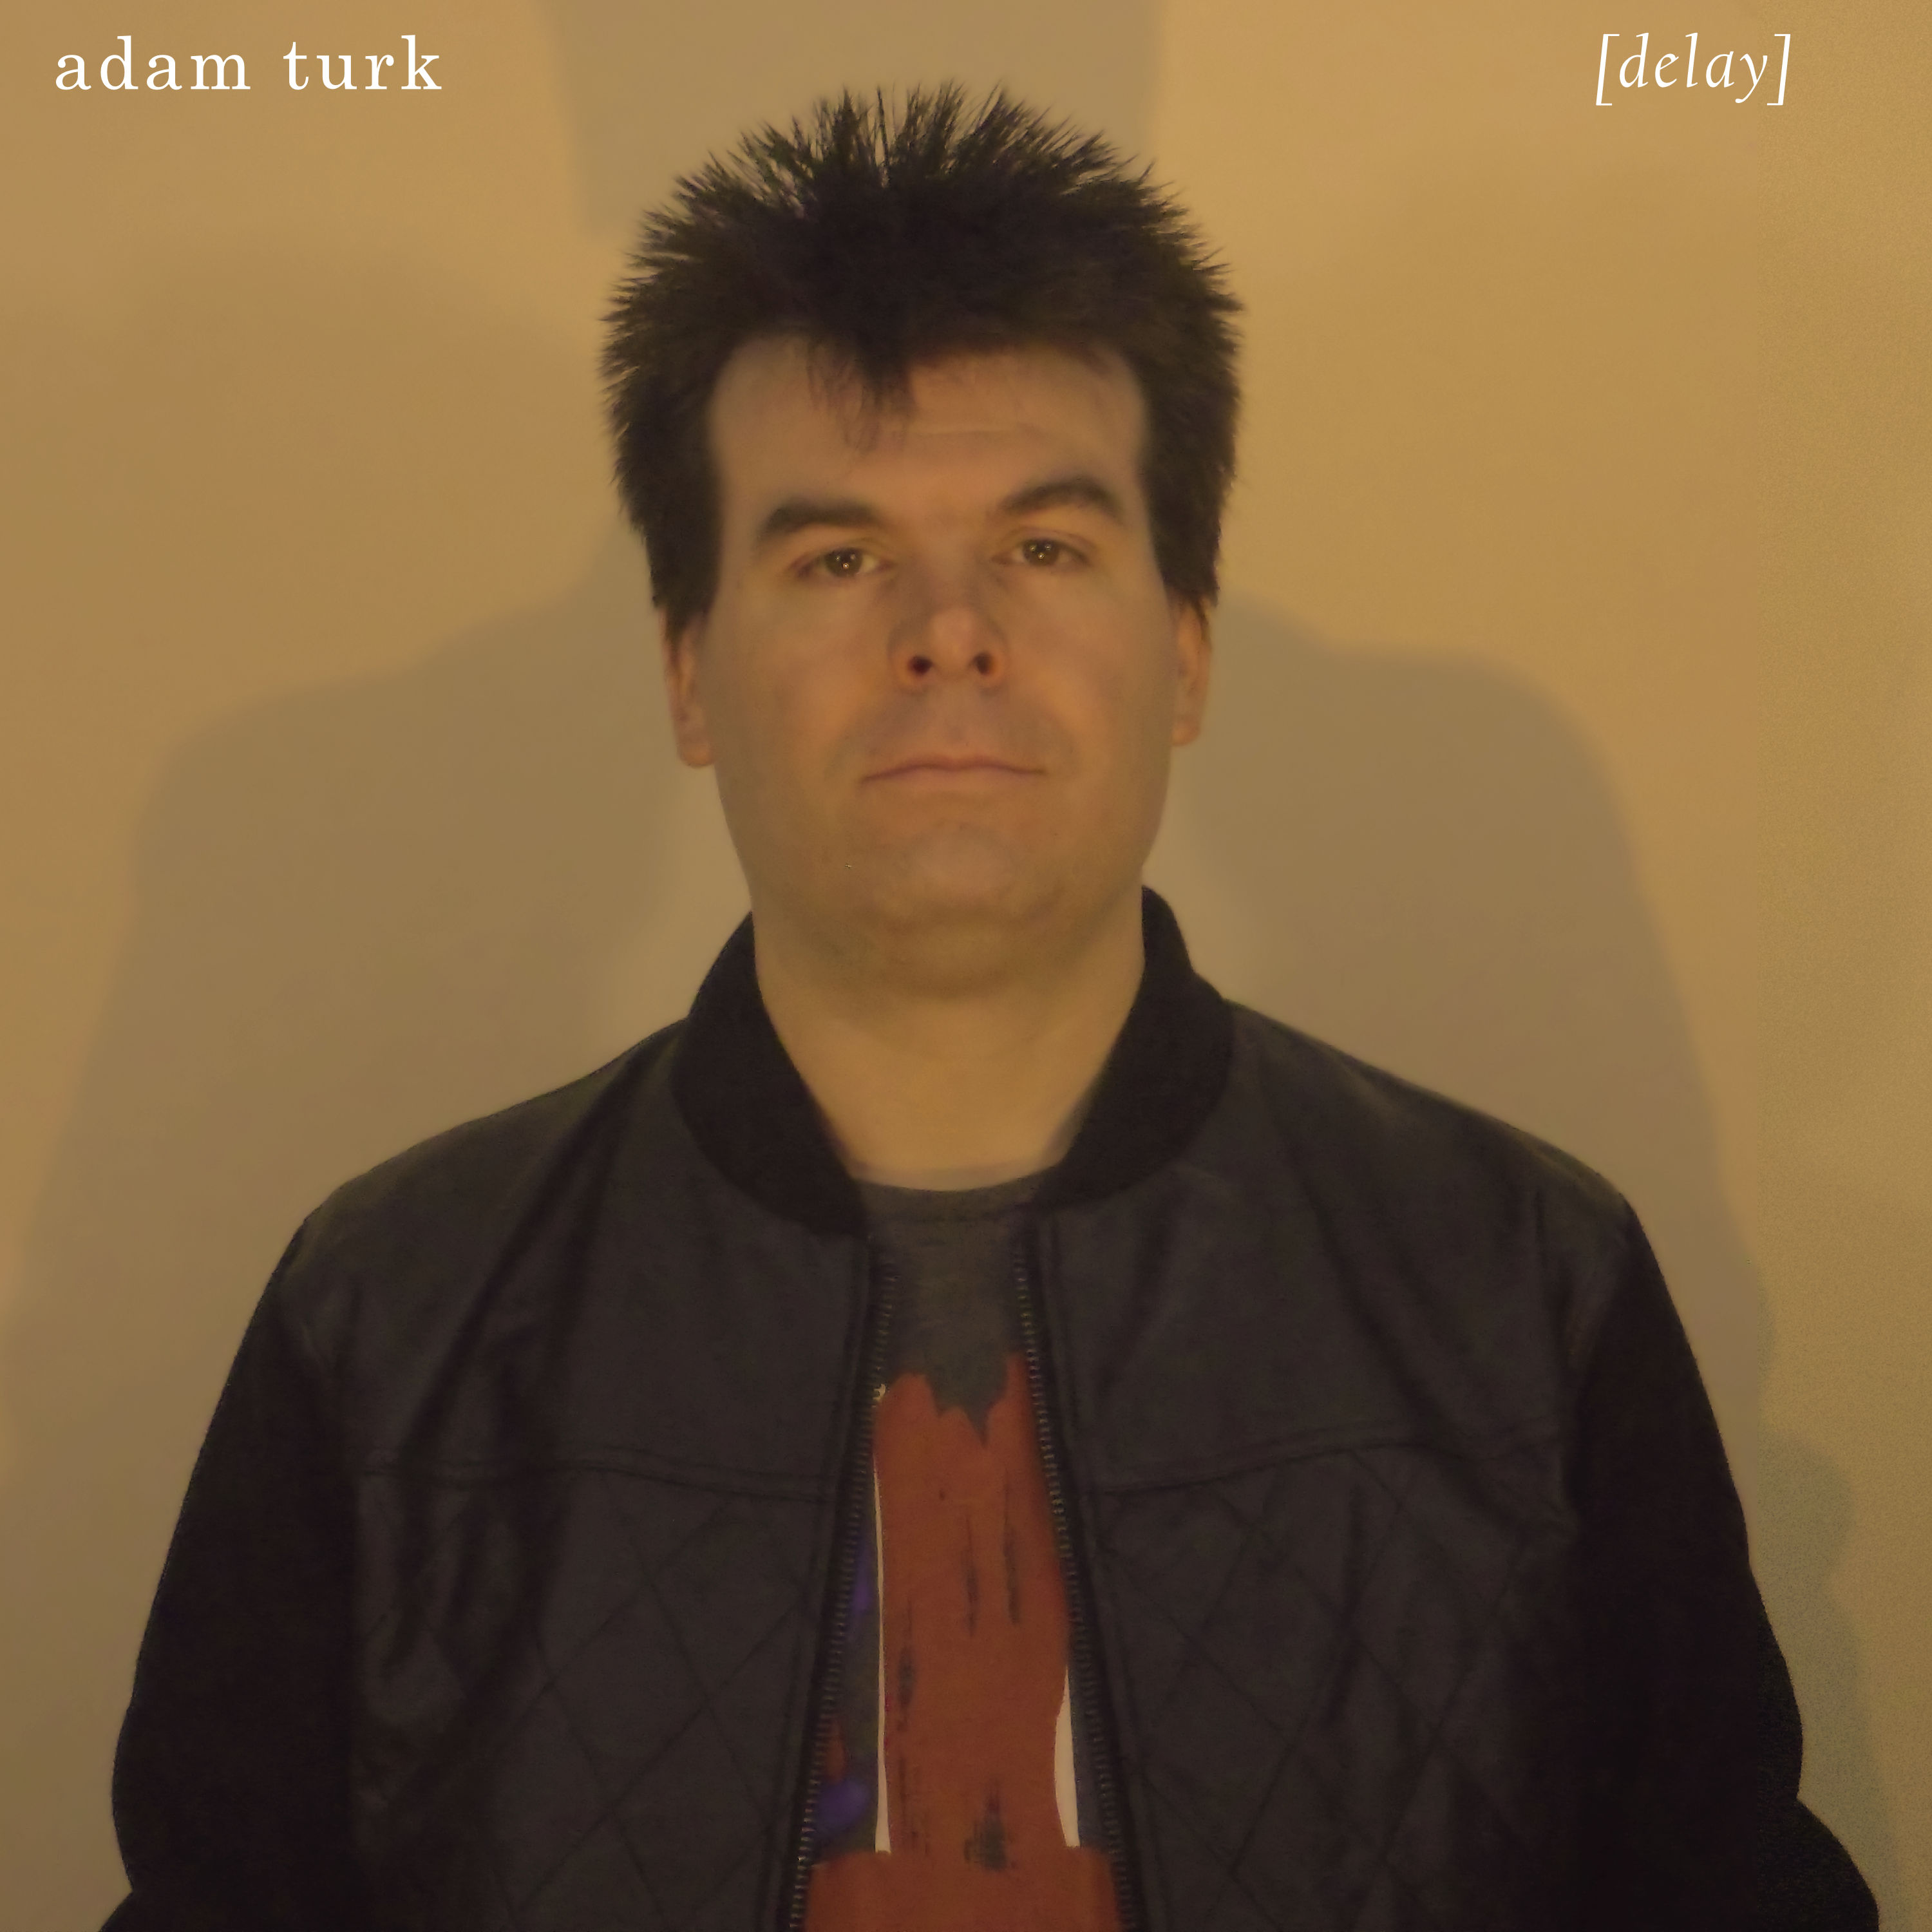 Adam Turk Delay Album Cover